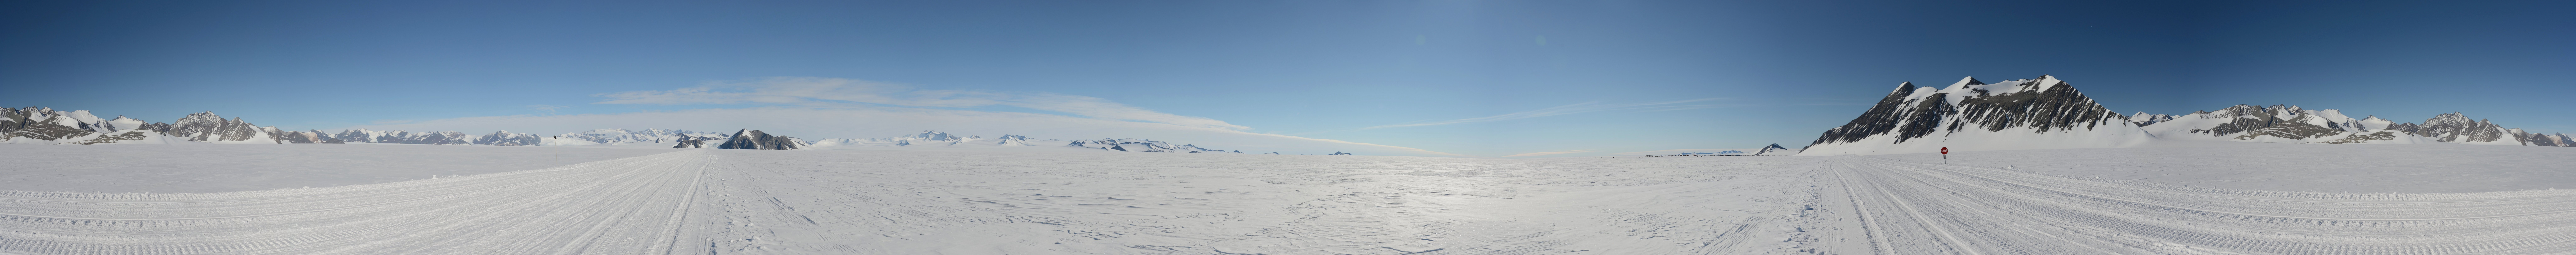 Union Glacier Panorama